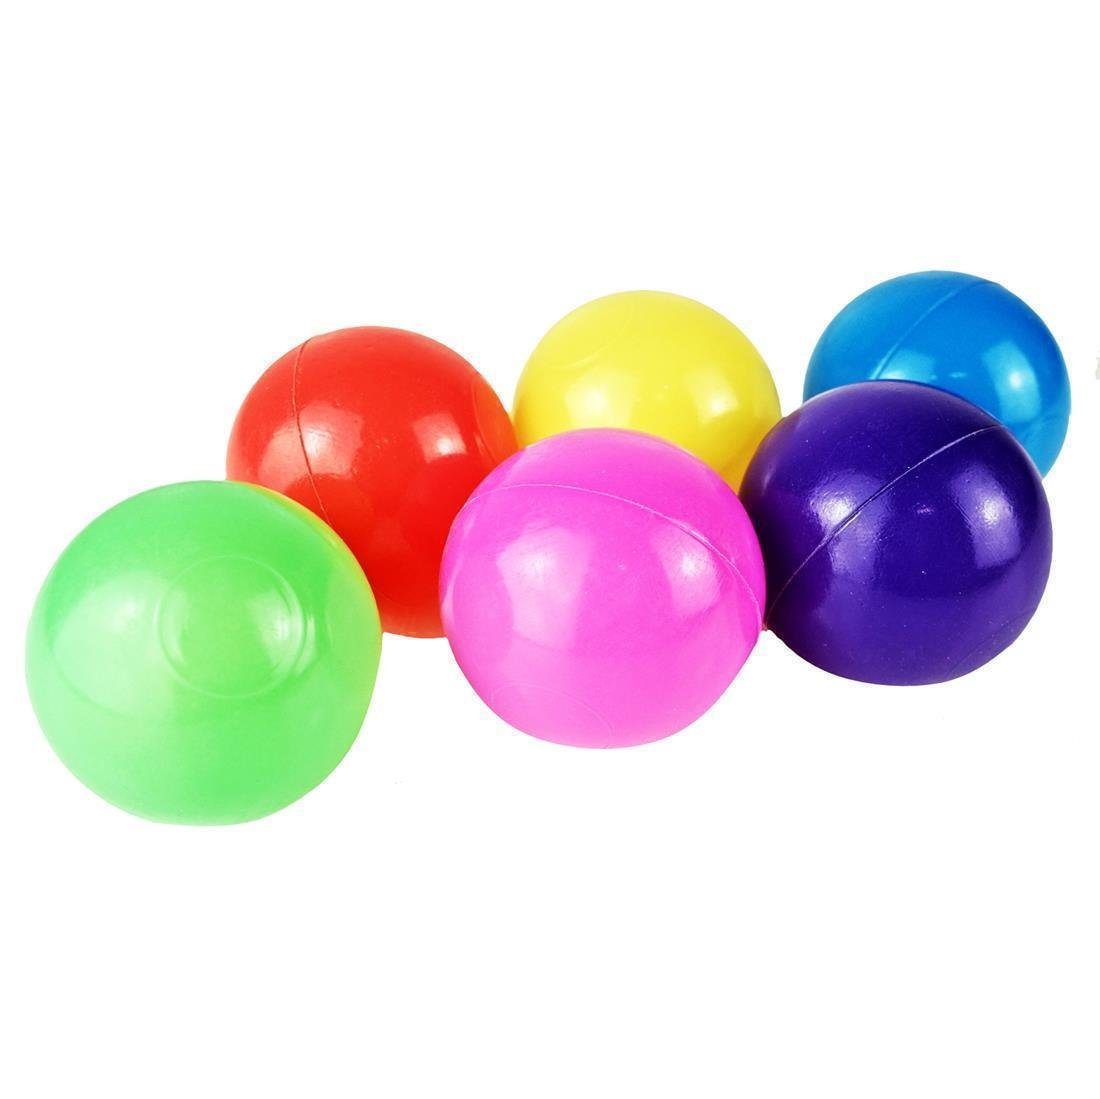 5,5cm Softball BAYLI - - Bällebad Bälle Mischung Ø Ball Bällebad-Bälle 1500 bunte Farben